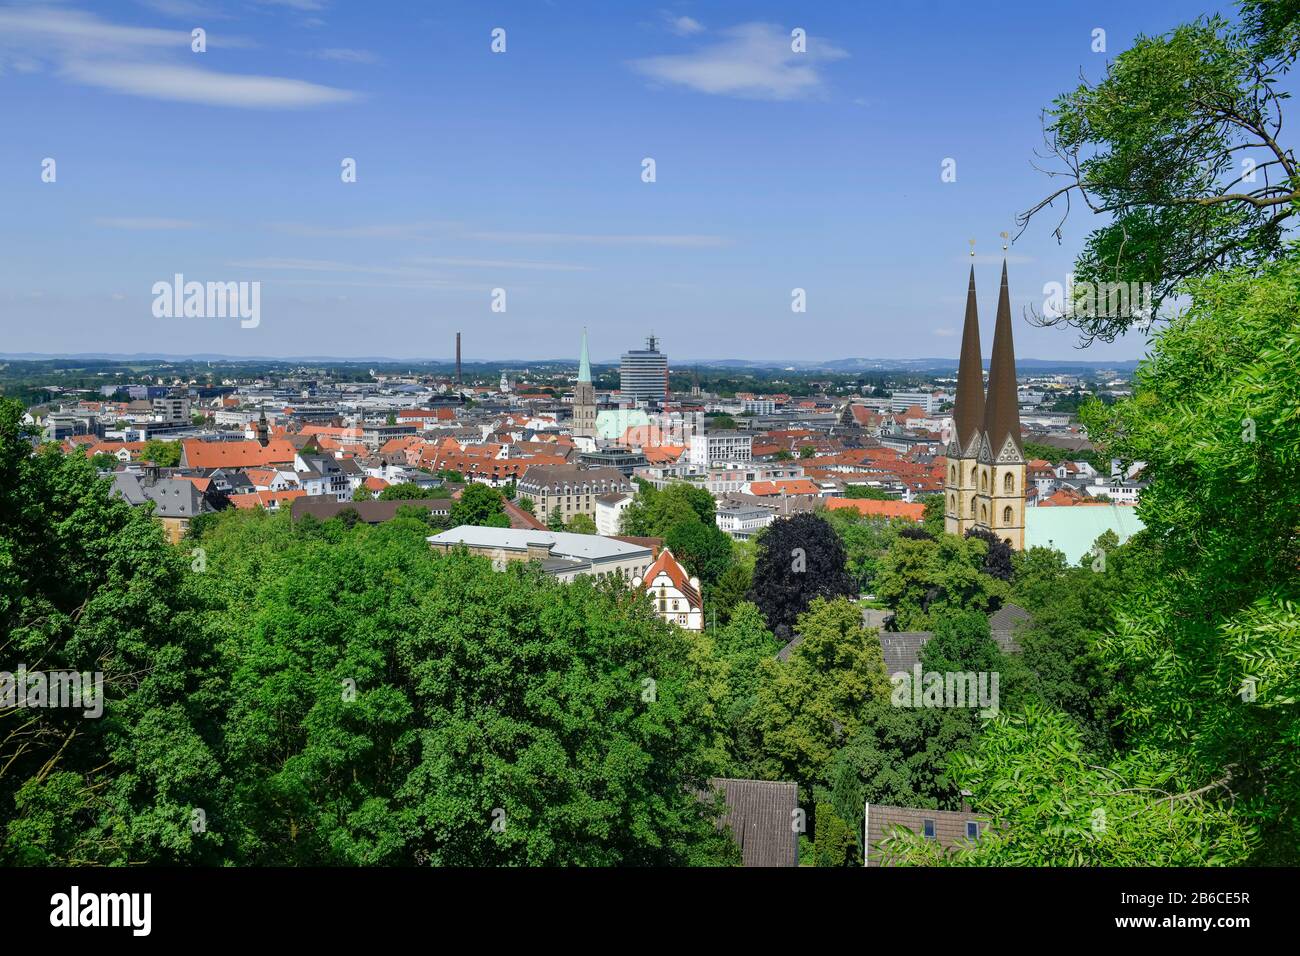 Stadtpanorama, Bielefeld, Nordrhein-Westfalen, Deutschland Stock Photo